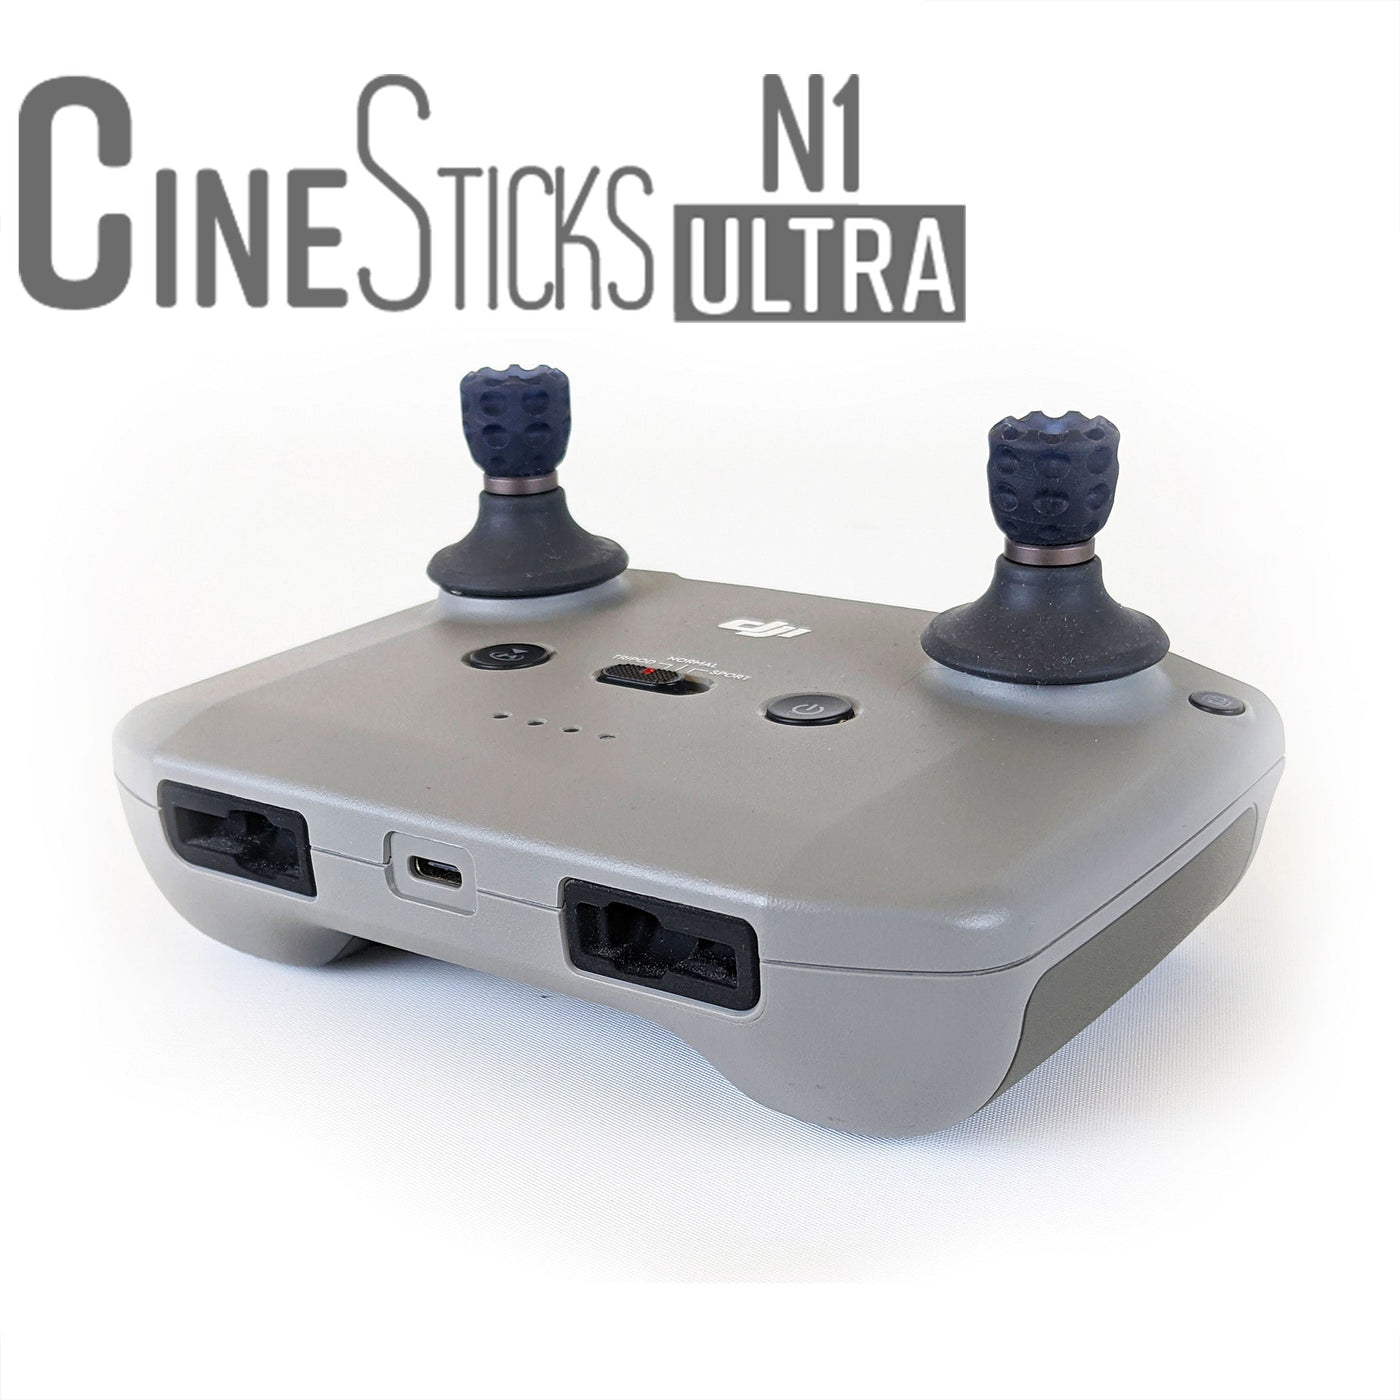 CineSticks N1 Ultra - Stati Uniti